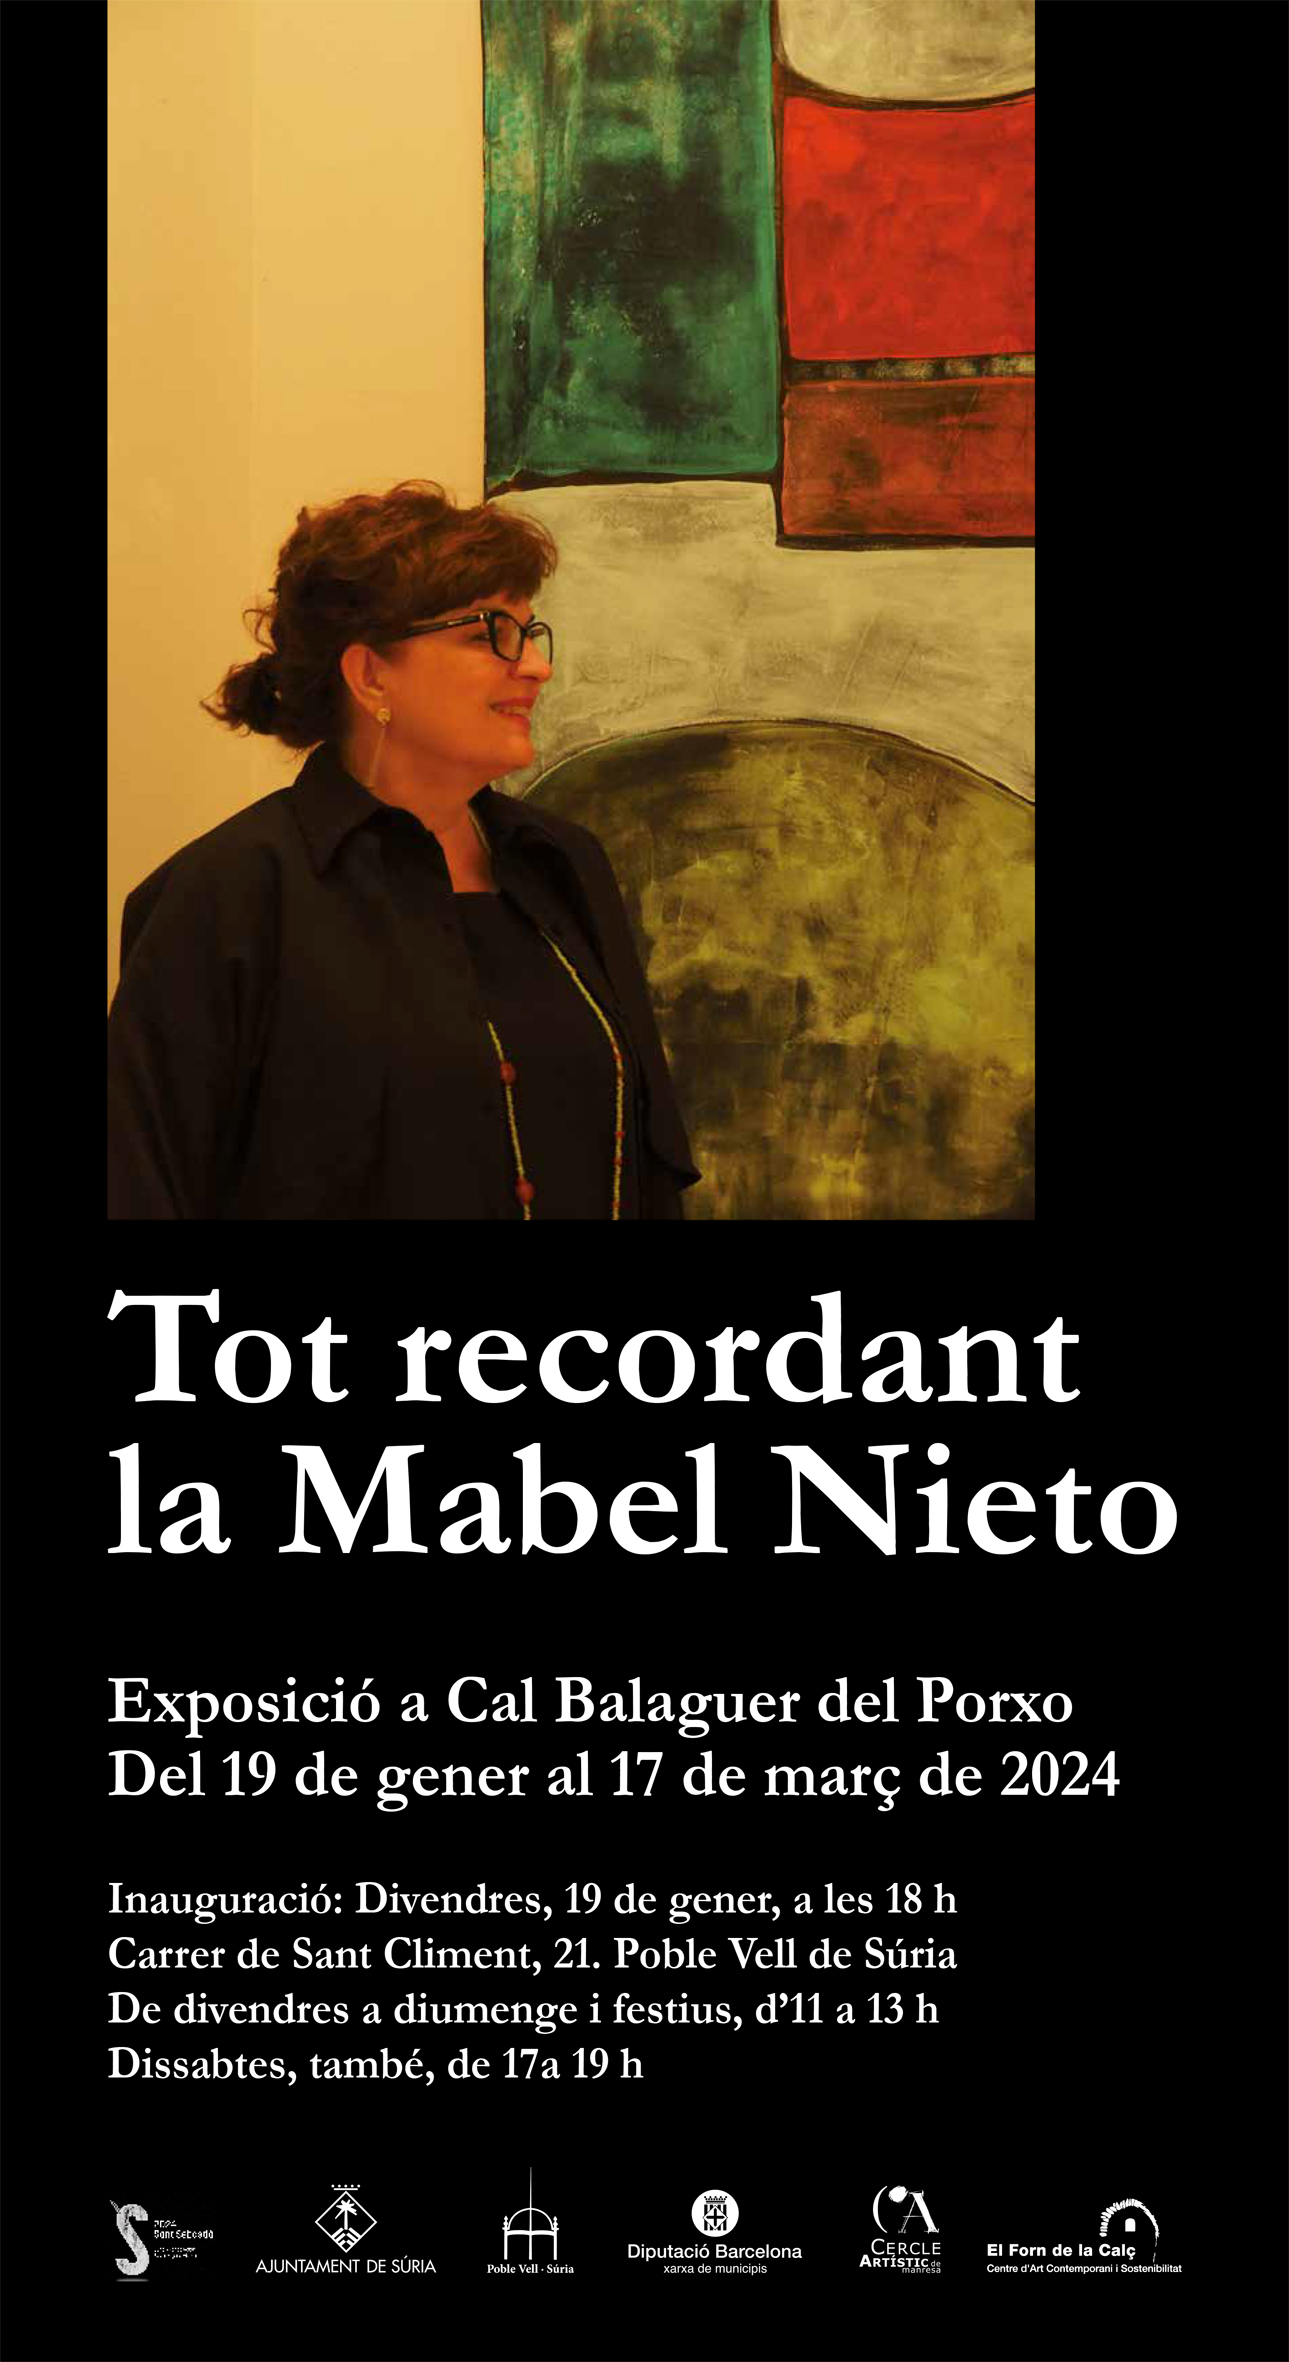 Cartell de l'exposició 'Tot recordant la Mabel Nieto' a Cal Balaguer del Porxo - Del 19 de gener al 17 de març.